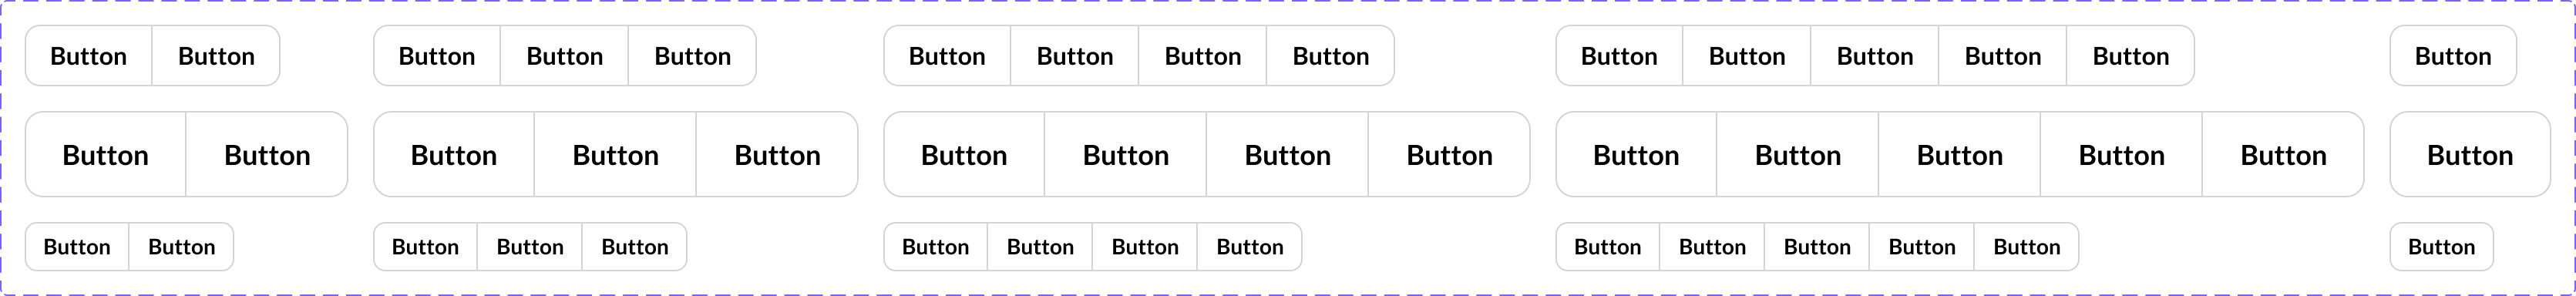 Button Group - Default